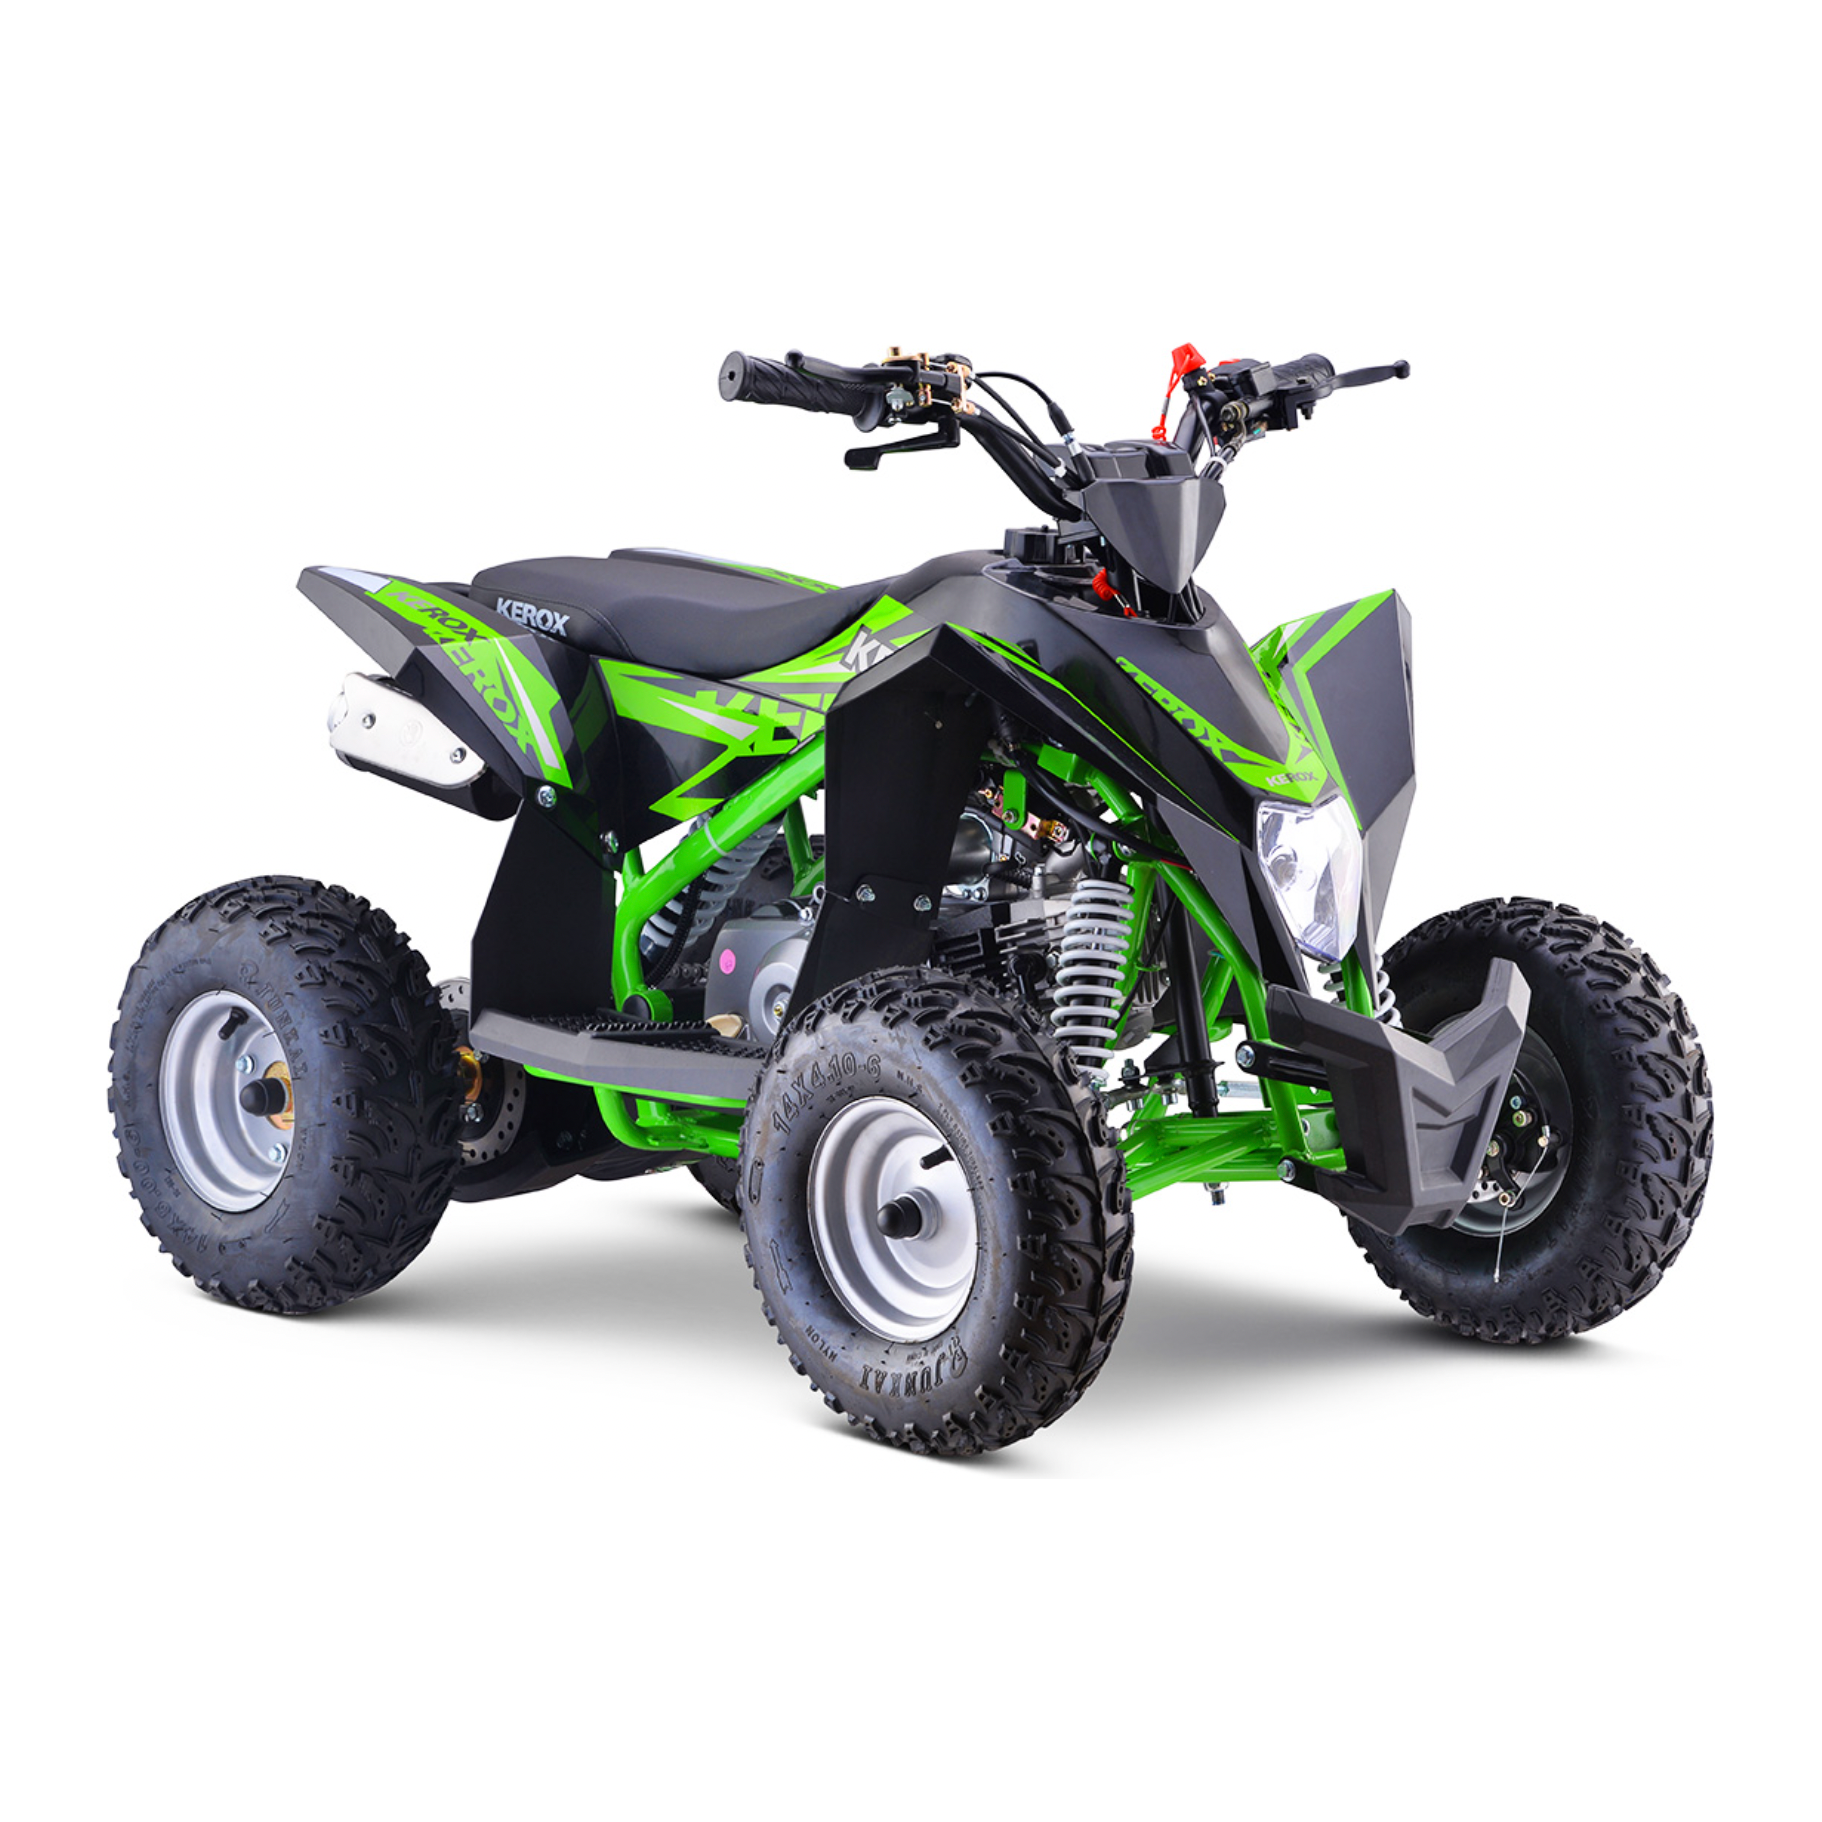 Quad enfant KEROX MKT 110cc/1000w – Motorsvelay